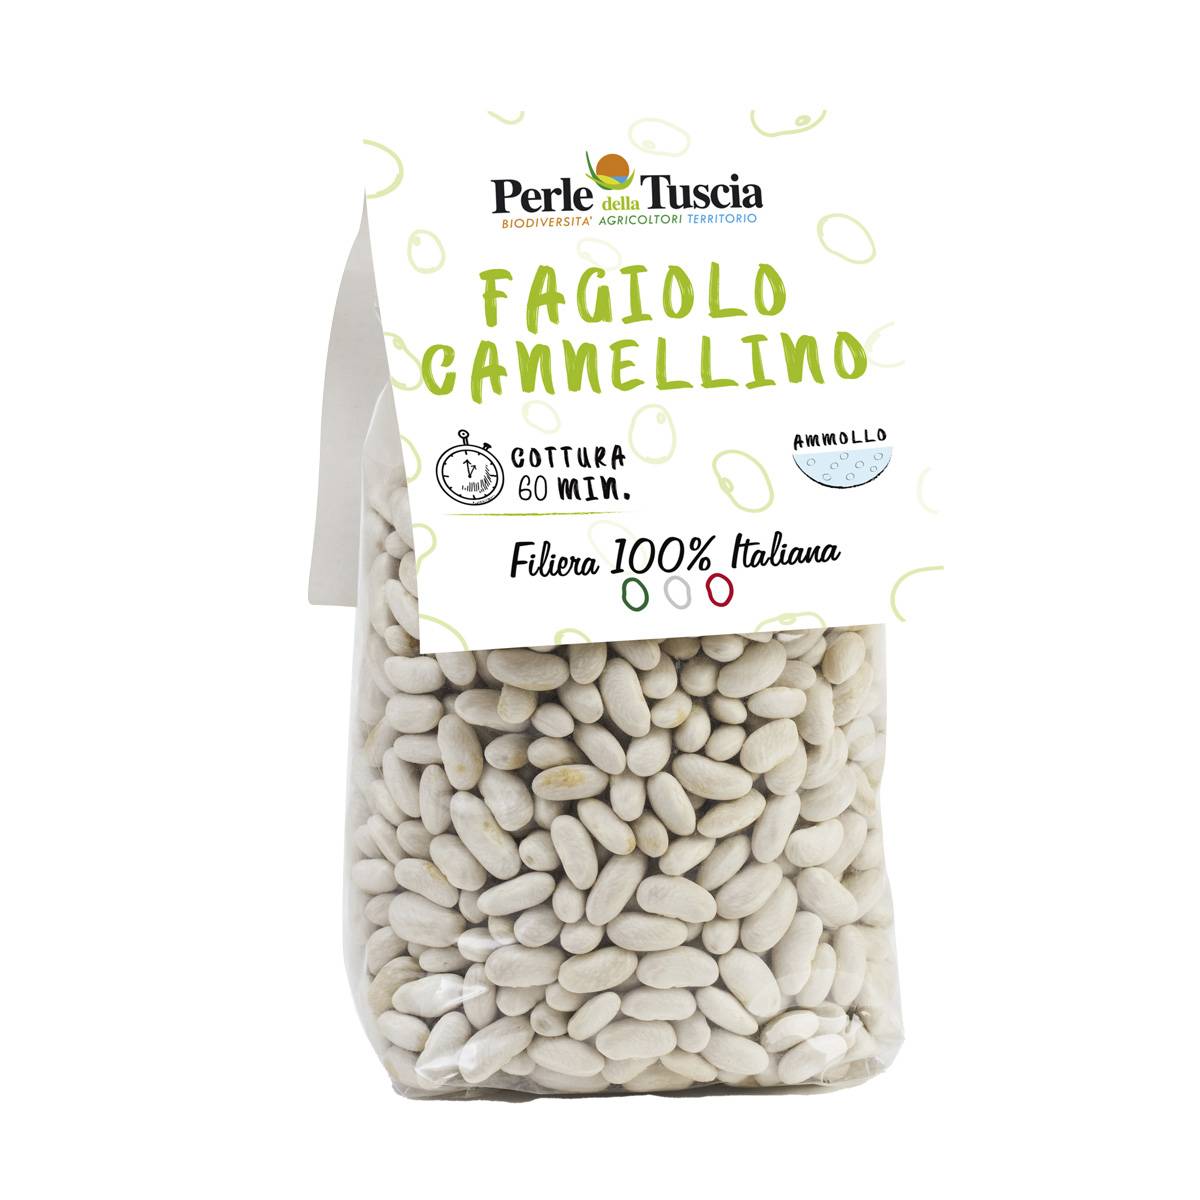 Fagioli Cannellini - Prodotti alimentari biologici, selezione patate viola  gourmet, legumi e cereali - Perle della Tuscia